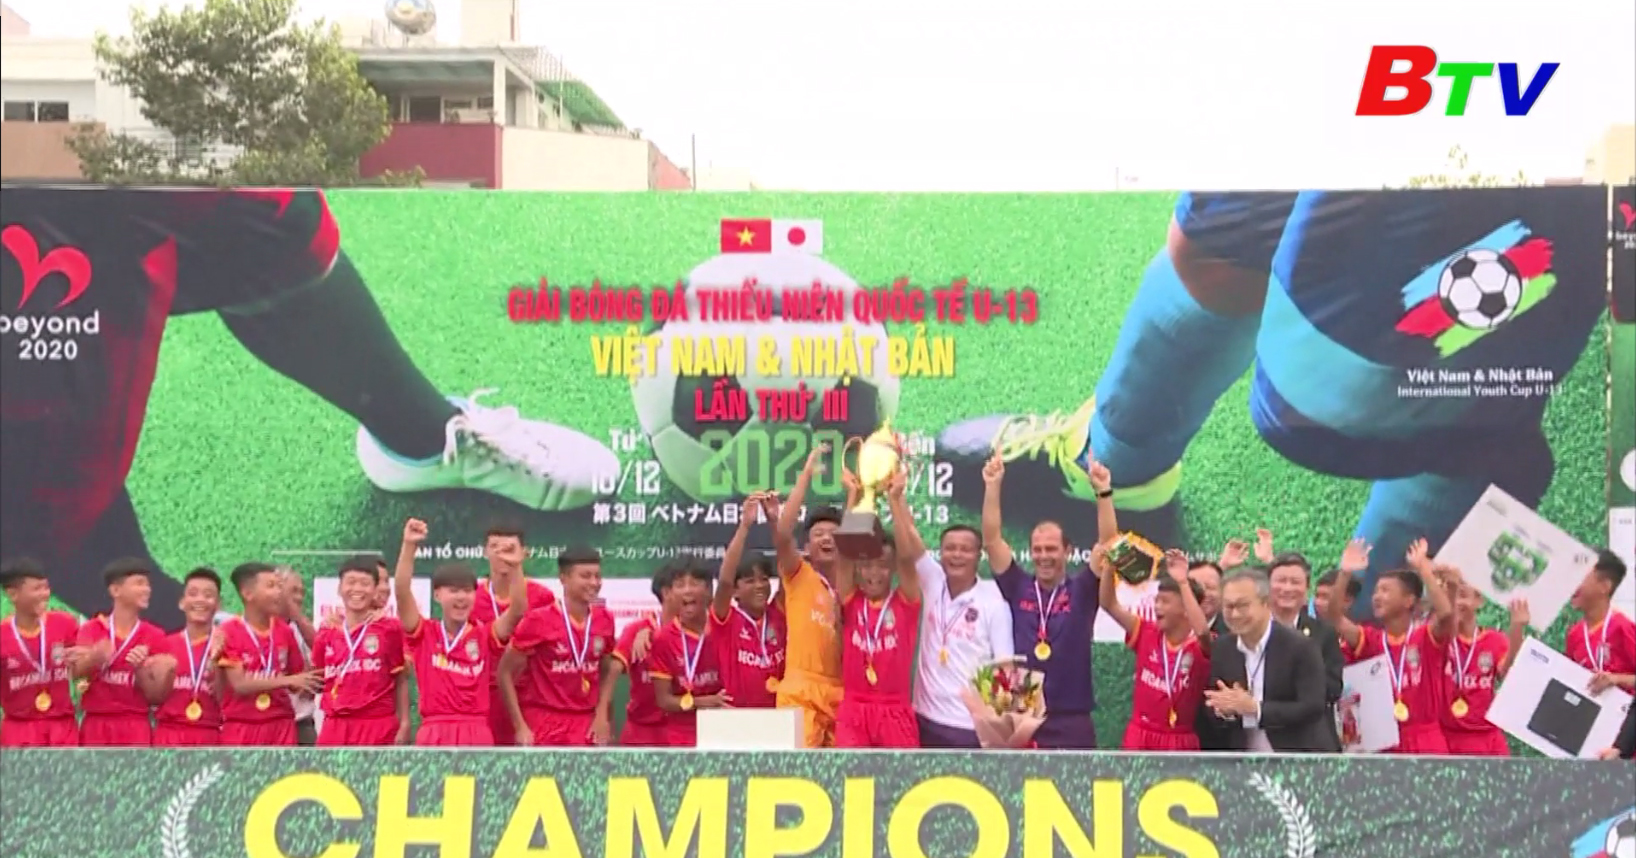 Giải bóng đá thiếu niên quốc tế U13 Việt Nam - Nhật Bản lần III năm 2020 – Khép lại thành công